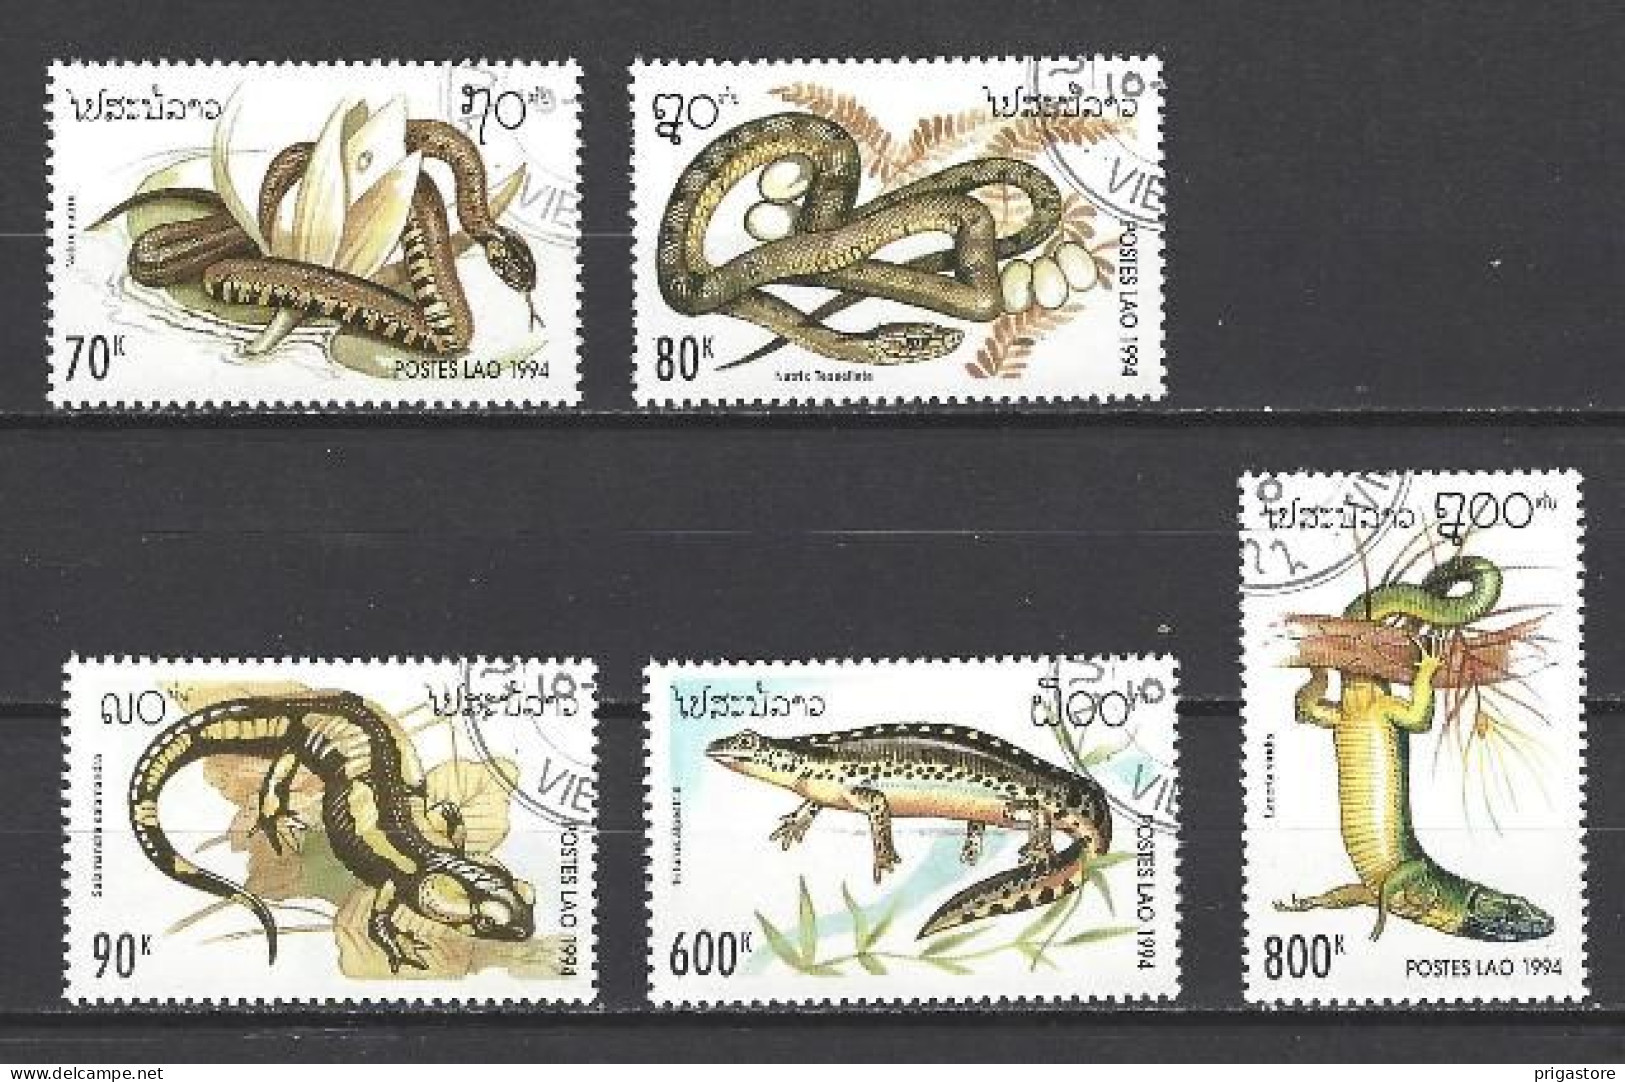 Animaux Reptiles Laos 1994 (124) Yvert N° 1134 à 1138 Oblitérés Used - Serpents